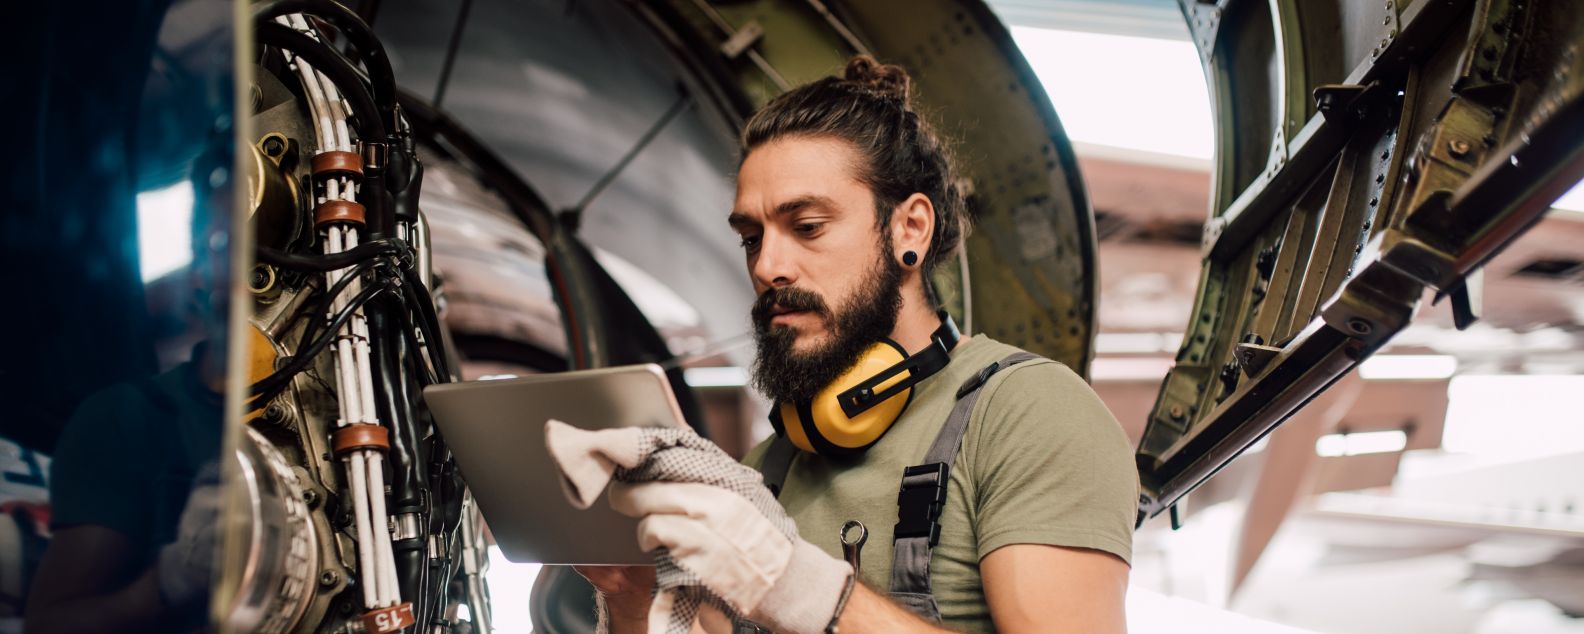 Seorang lelaki menggunakan tablet digital saat memperbaiki pesawat